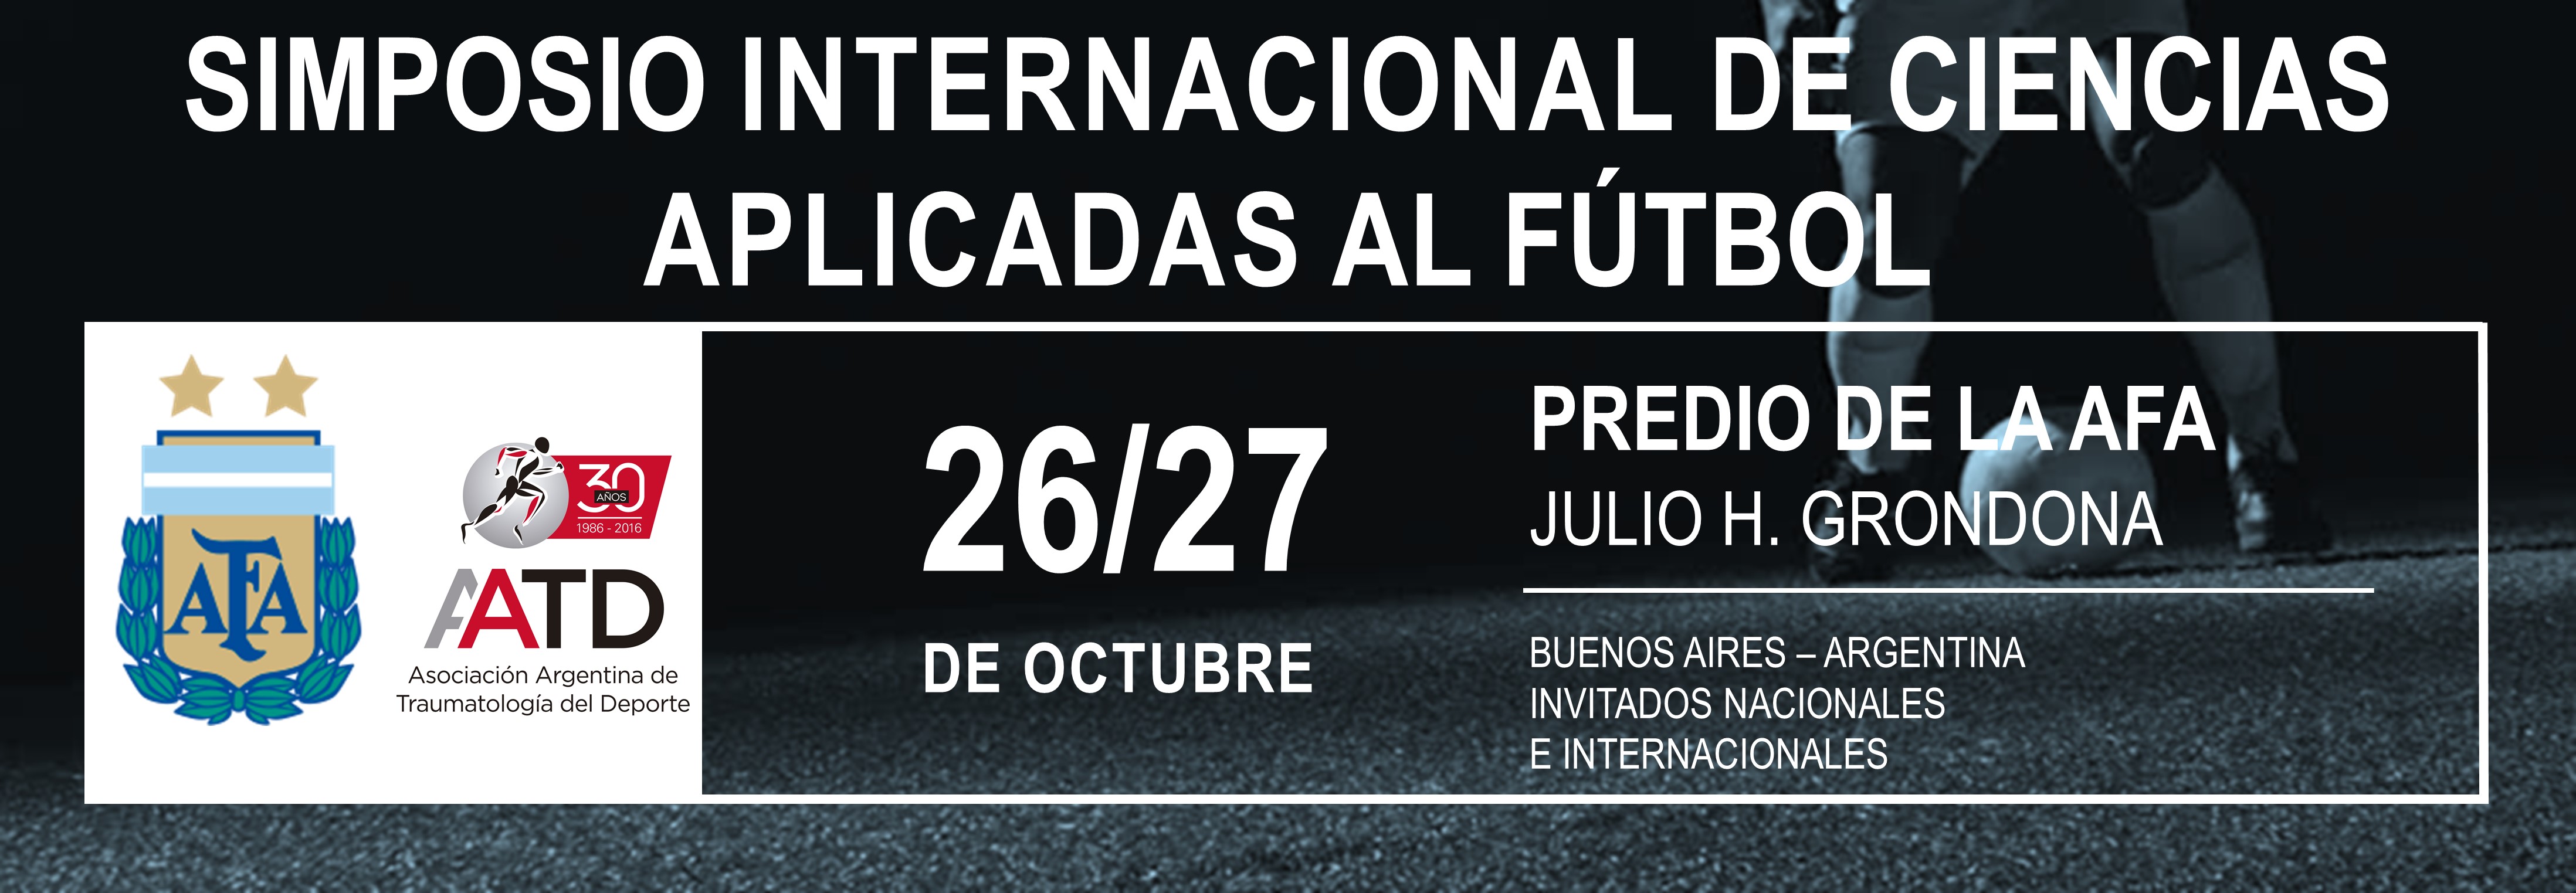 Simposio Internacional de Ciencias aplicadas al fútbol